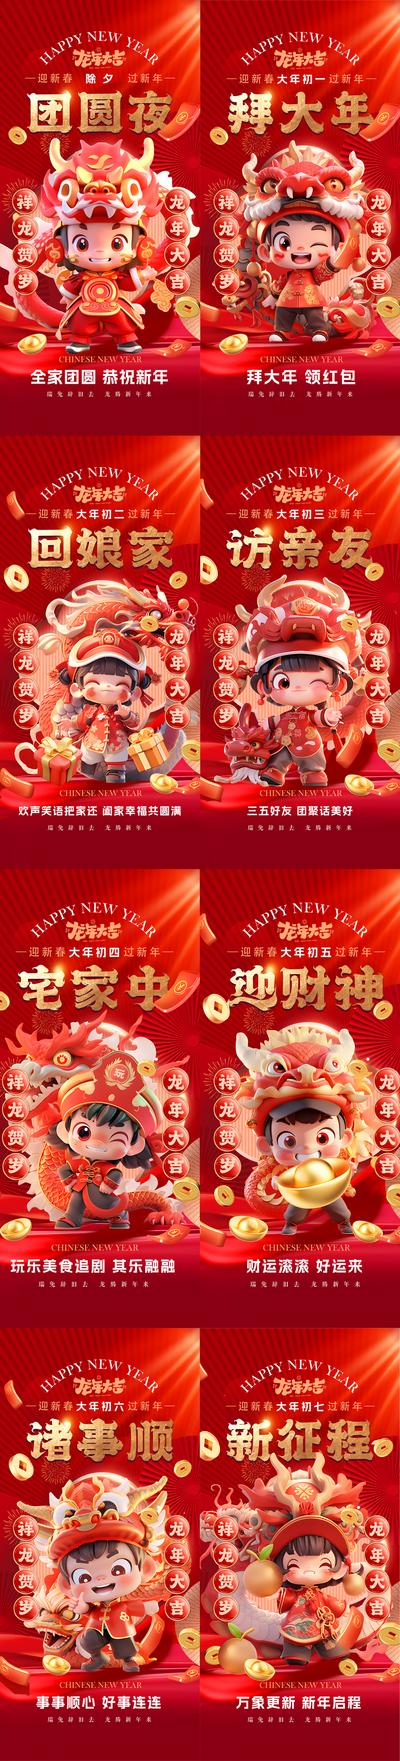 南门网 广告 海报 国潮 新年 房地产 龙年 春节 过年 大年初一 除夕 中国传统节日 手绘 红色 初一到初七